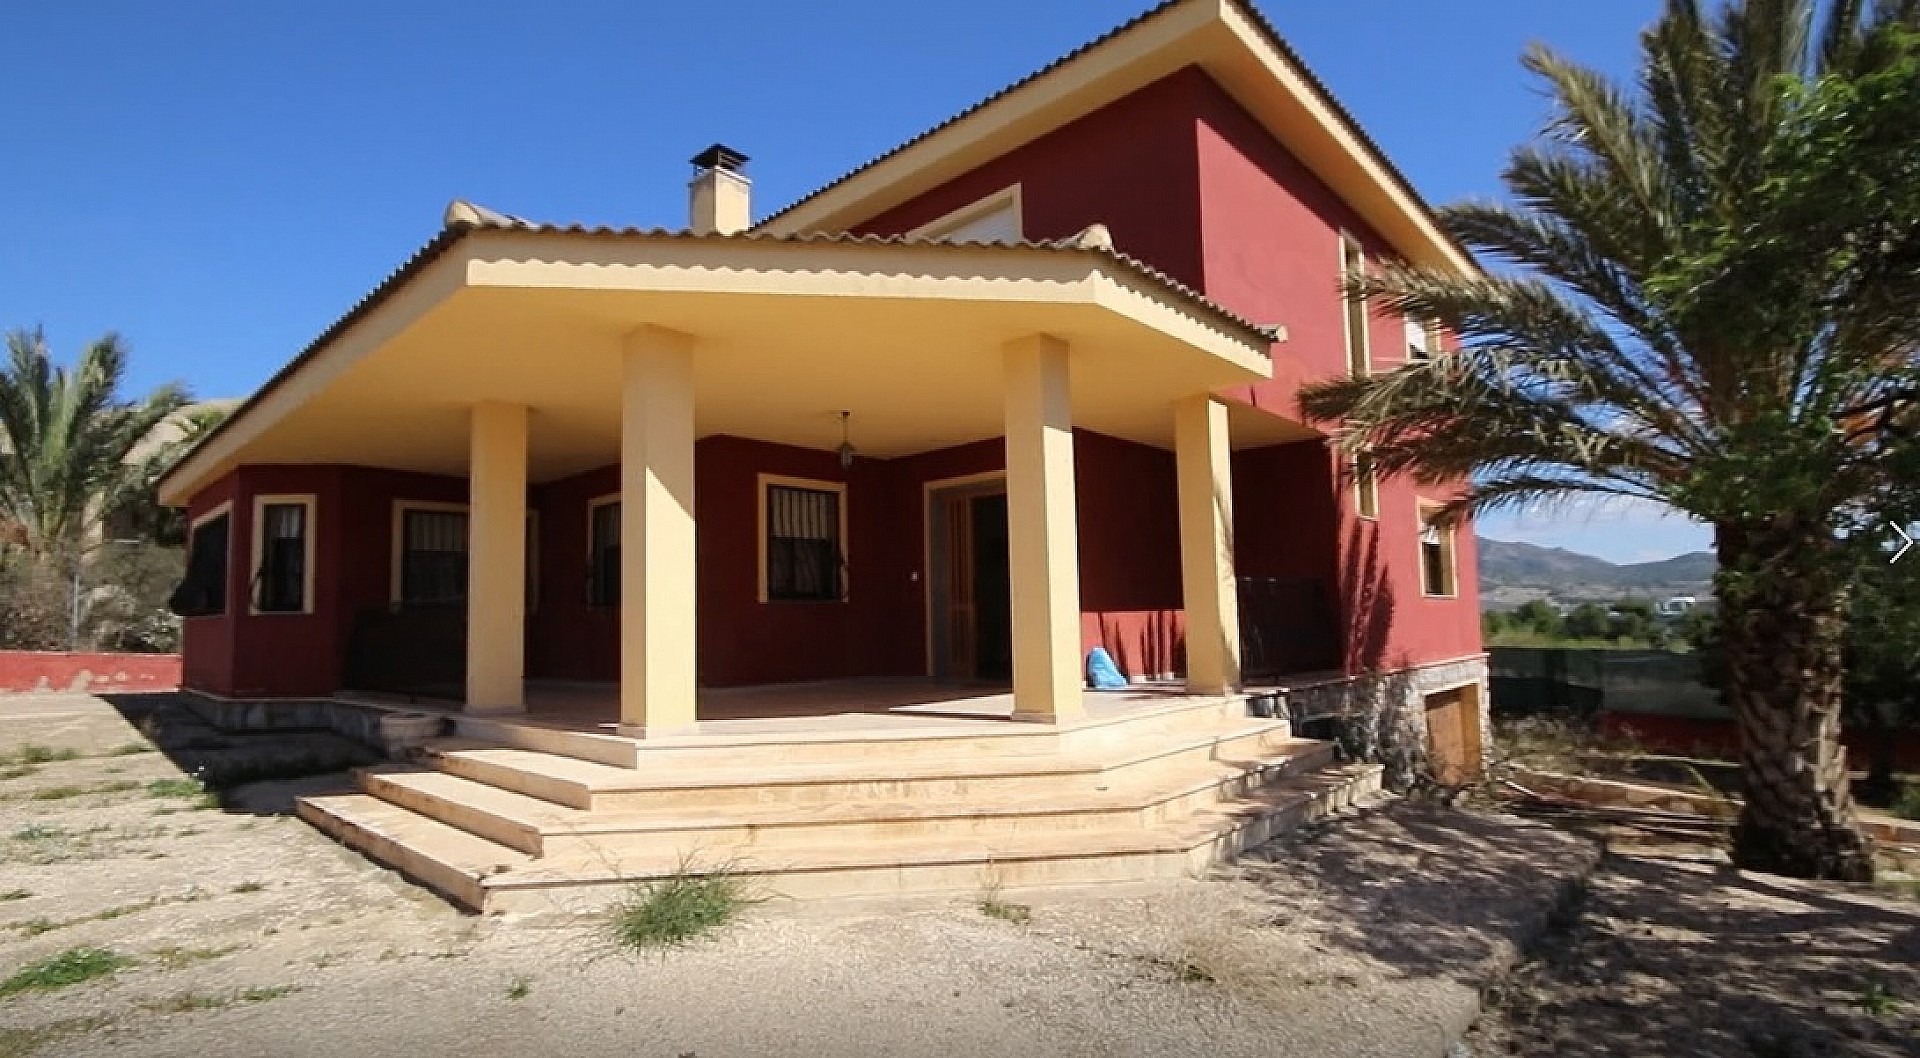 5 bedroom house / villa for sale in Salinas, Costa Blanca